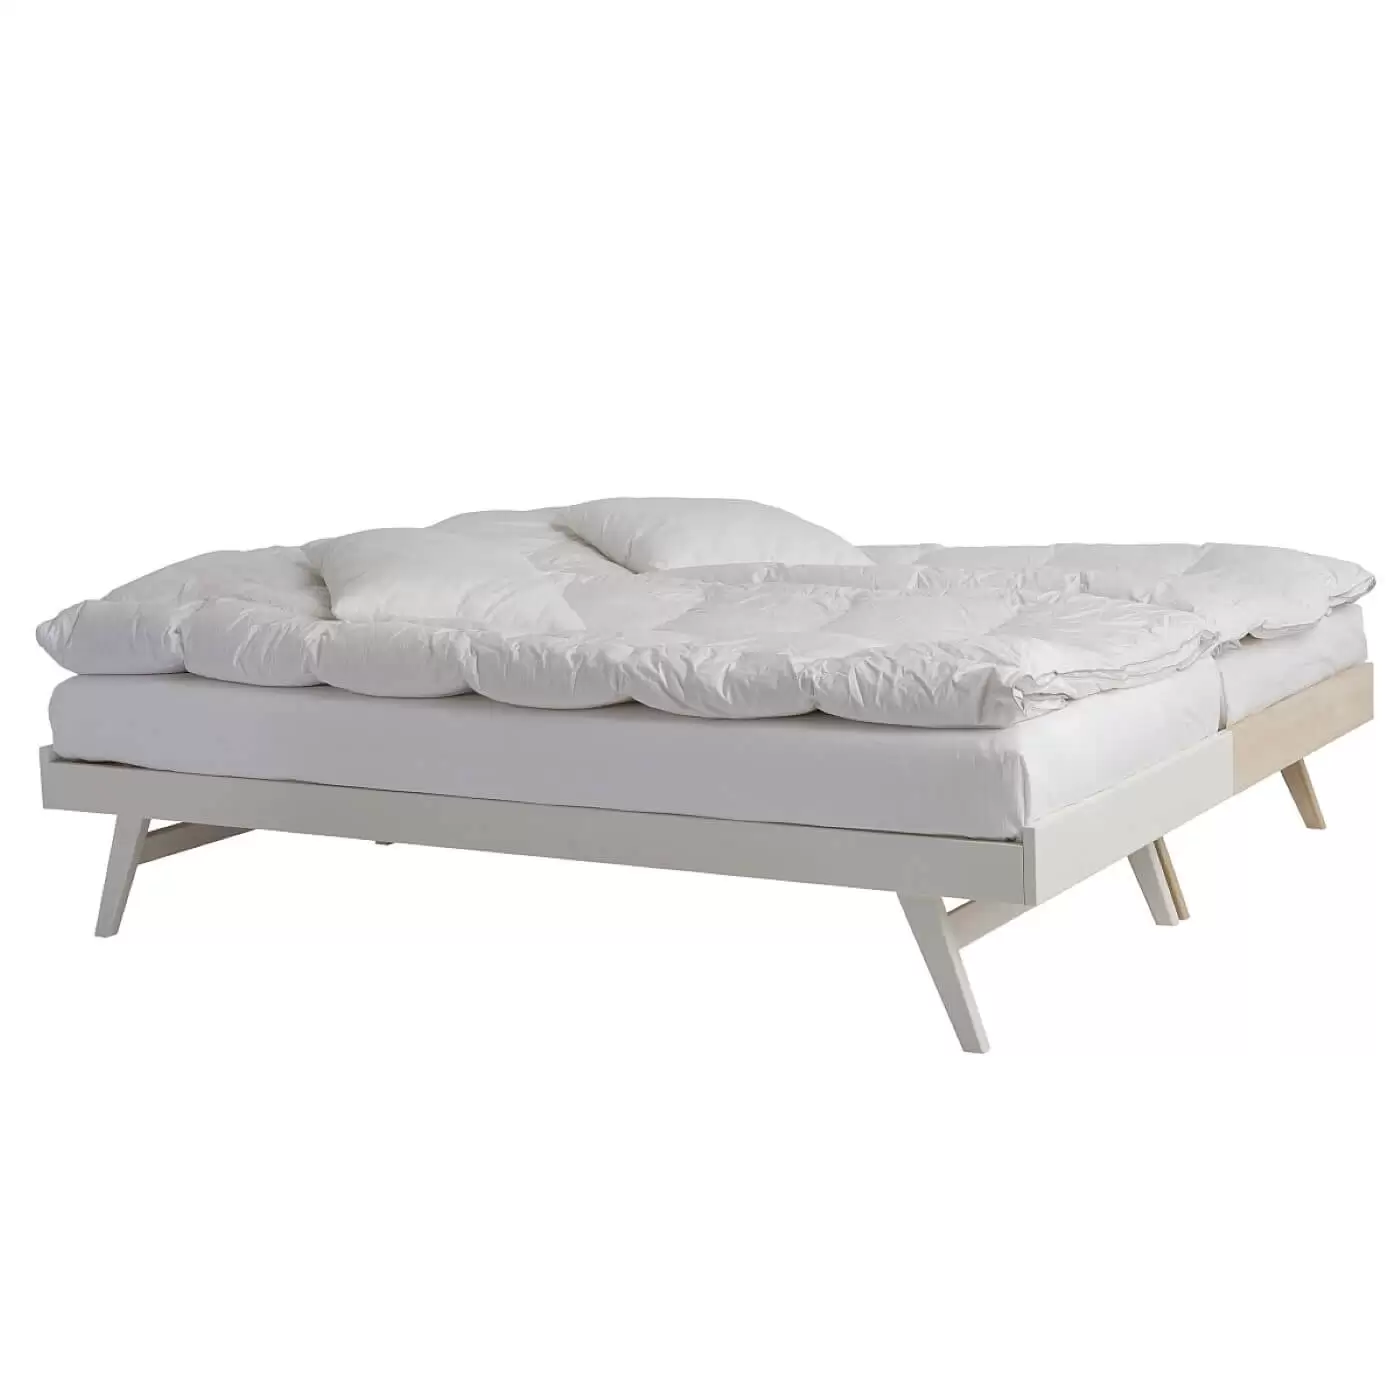 Łóżko na nóżkach NOTTE. Łóżka drewniane i białe 90x200 z materacami i białą pościelą złączone, stojące razem obok siebie. Praktyczny skandynawski design